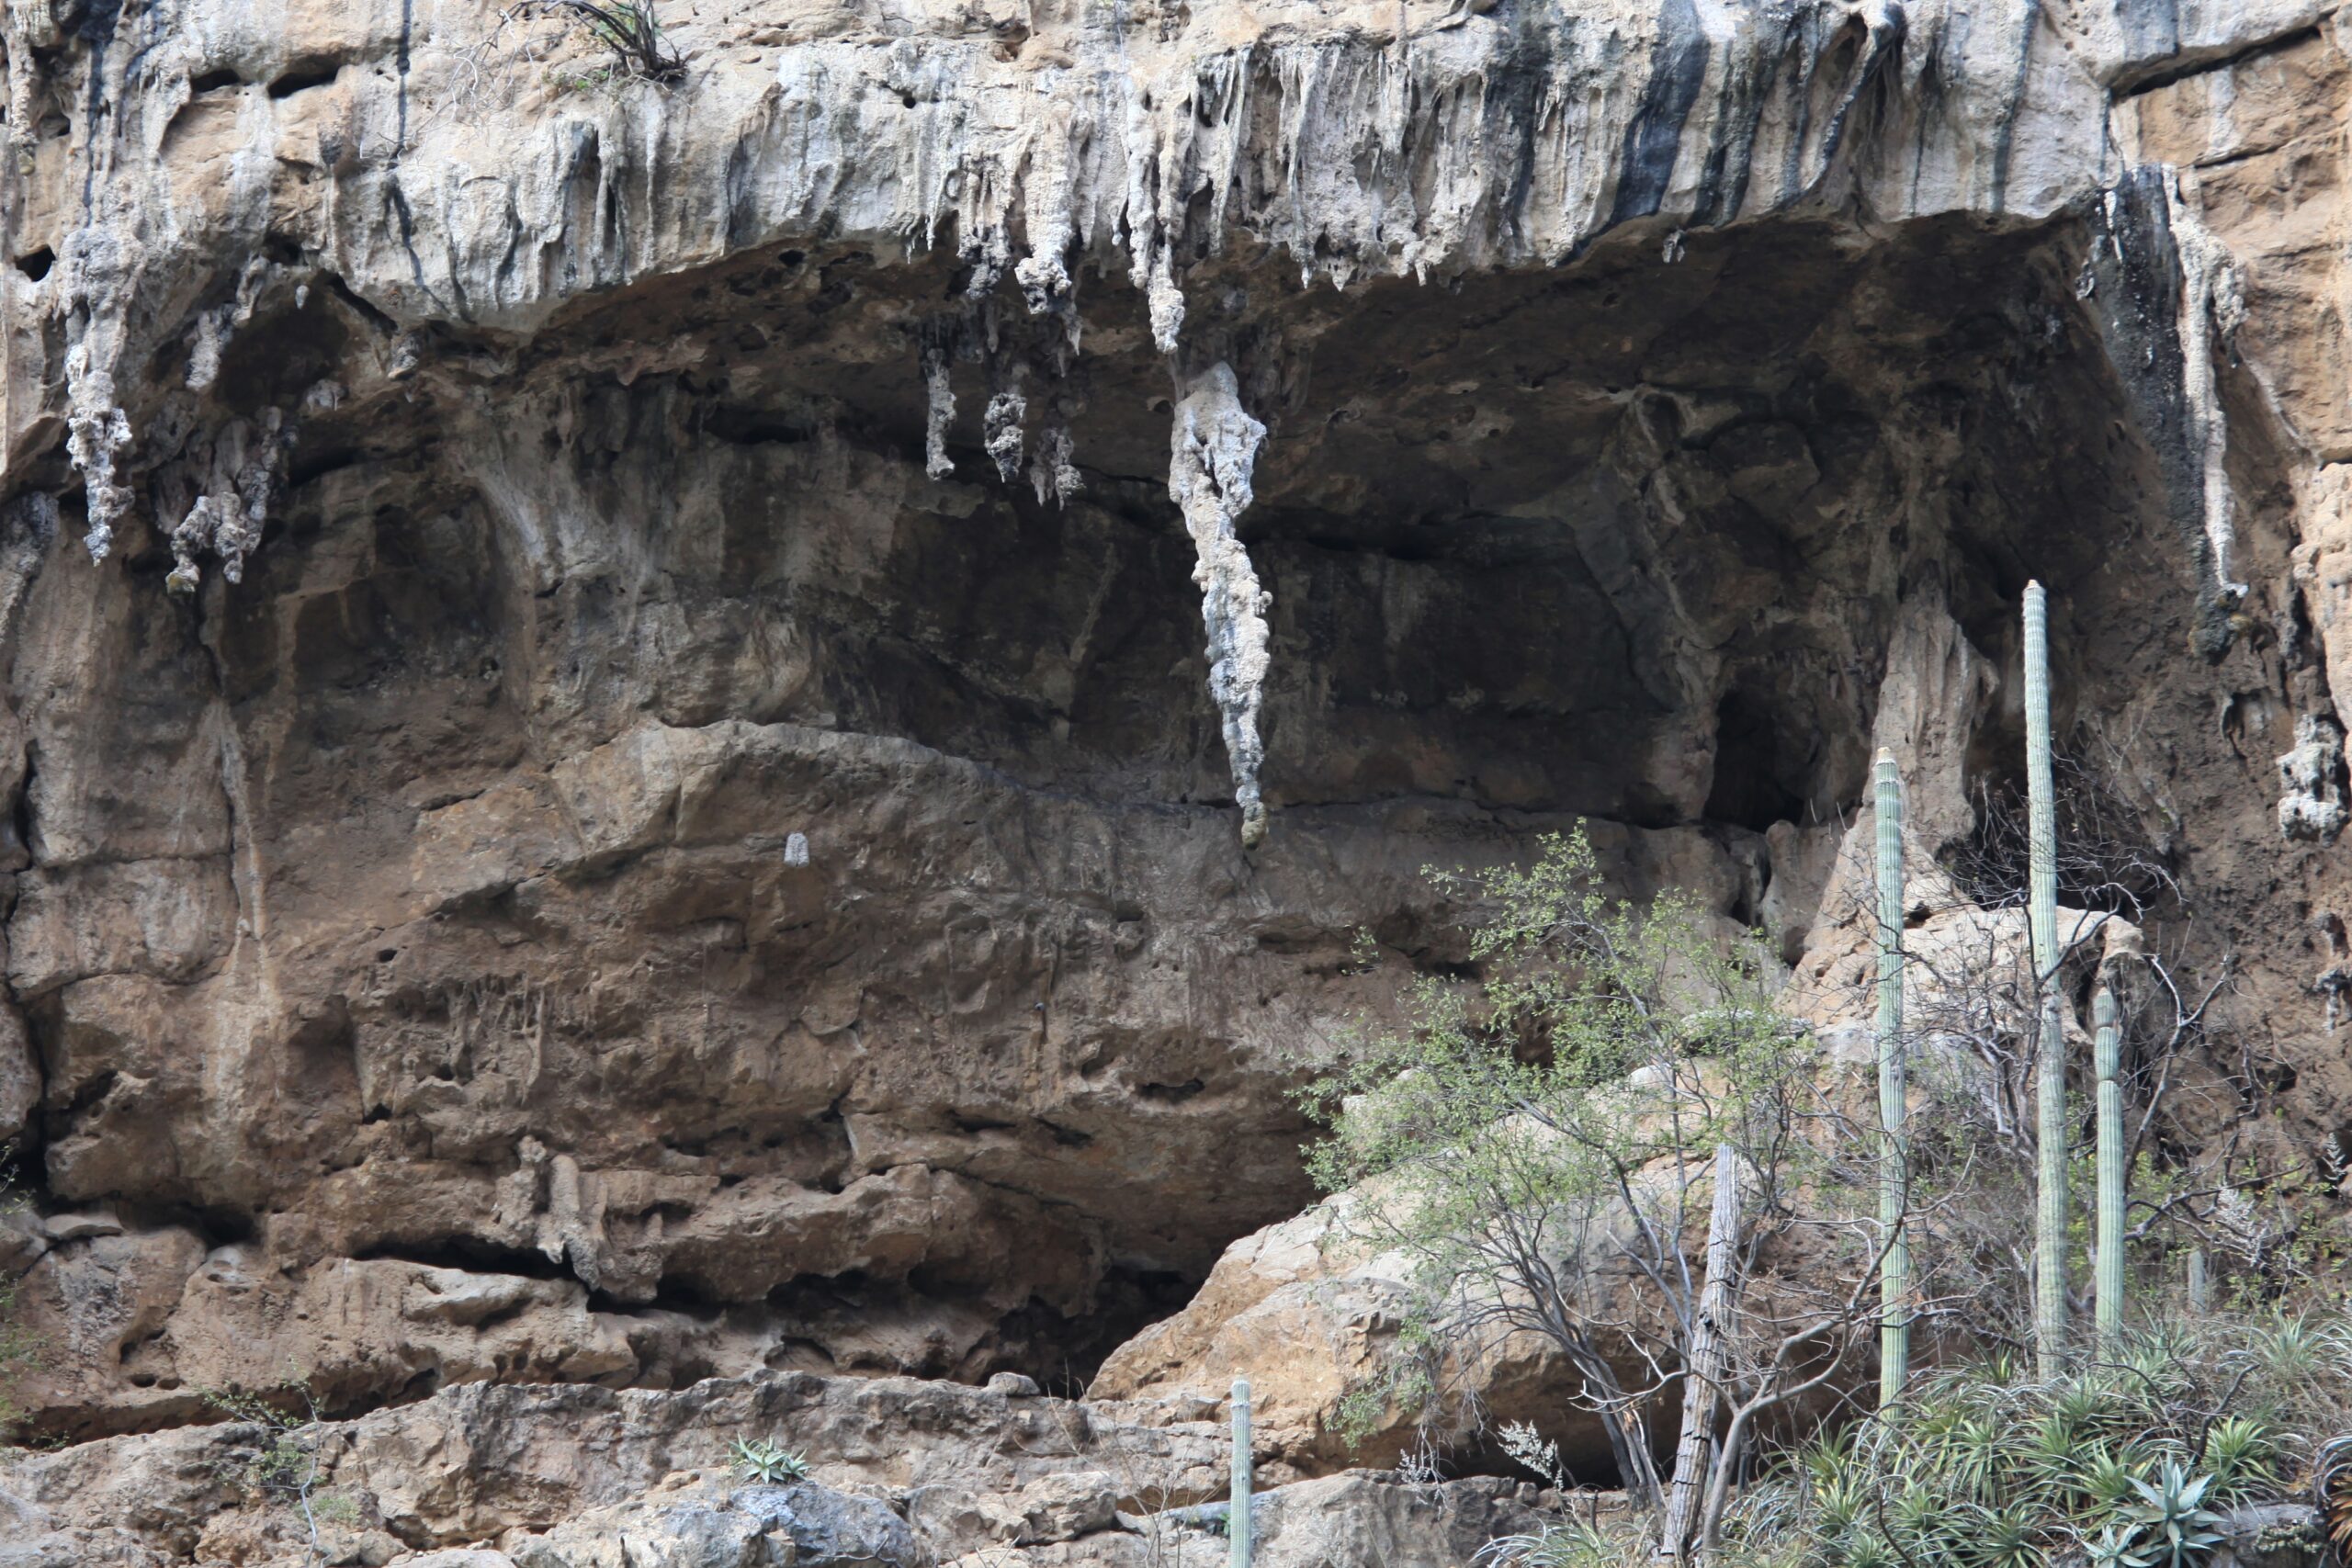 Conoce las formaciones rocosas que podrás admirar en tu próximo viaje al Cañón del Sumidero El Cañón del Sumidero es uno de los atractivos turísticos más impresionantes de México, famoso entre otras cosas, por sus increíbles formaciones rocosas.  https://larevistadelsureste.com